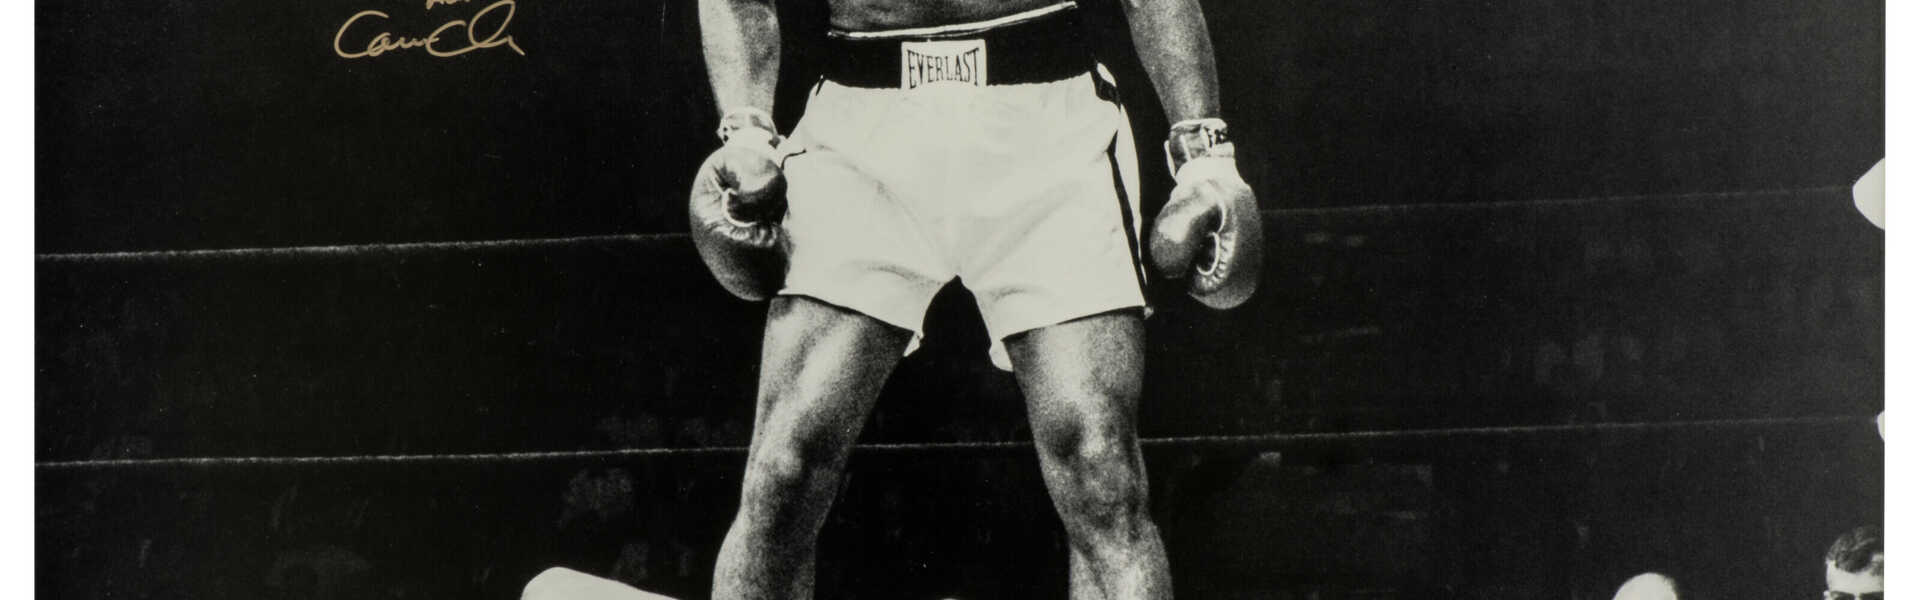 Muhammad Ali vs. Sonny Liston, 25 May 1965